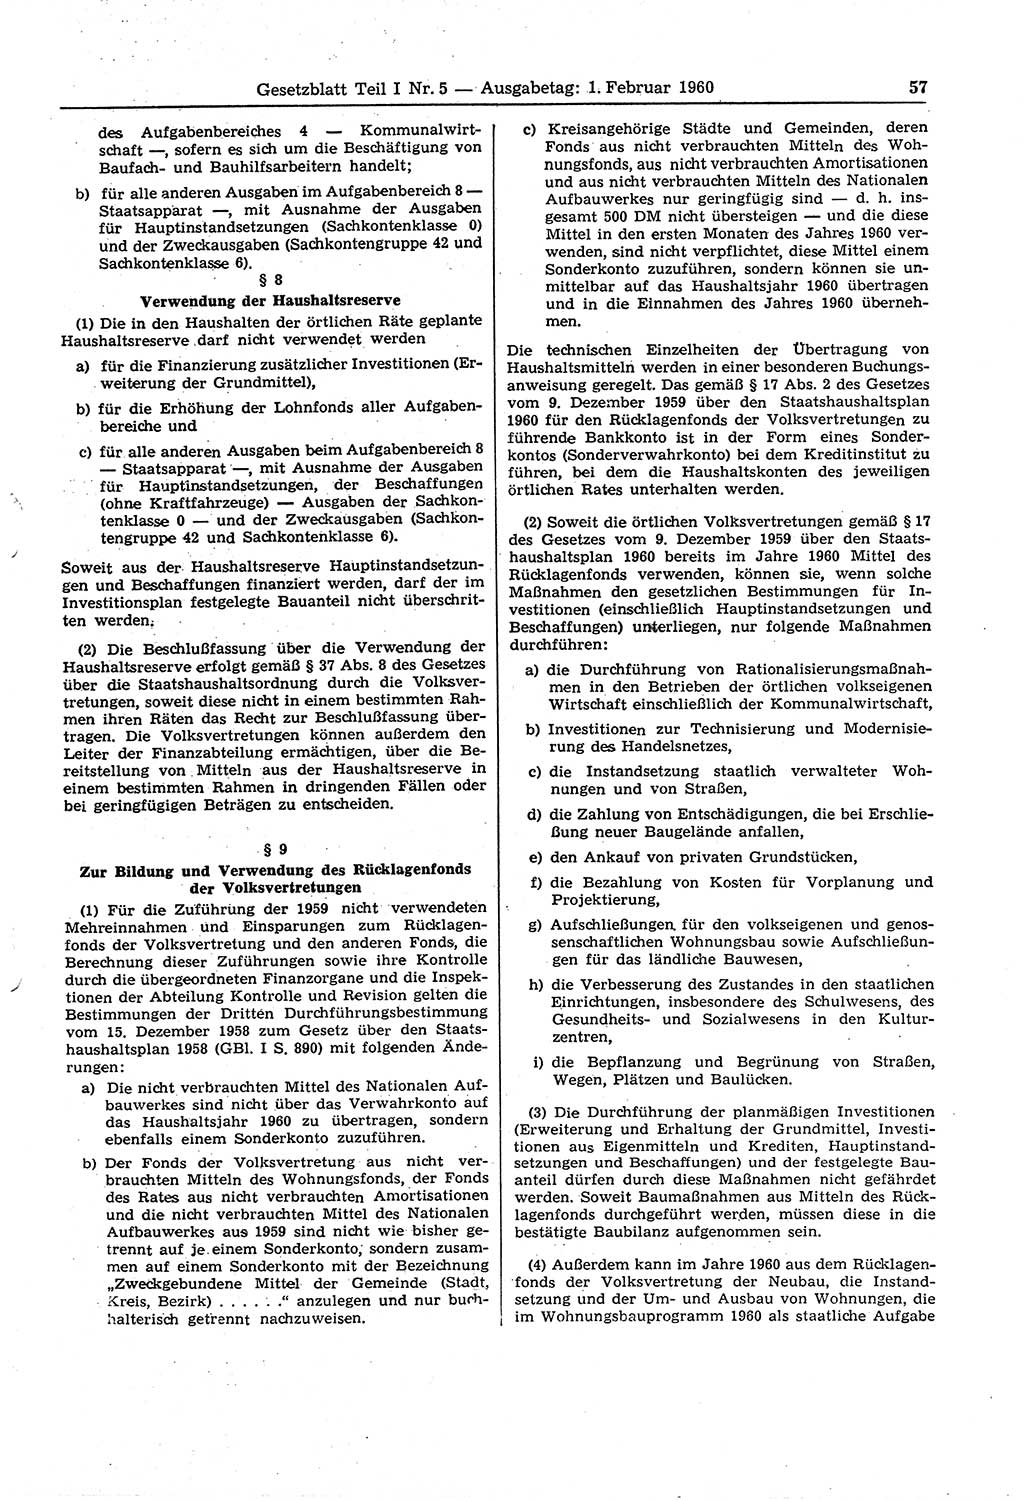 Gesetzblatt (GBl.) der Deutschen Demokratischen Republik (DDR) Teil Ⅰ 1960, Seite 57 (GBl. DDR Ⅰ 1960, S. 57)